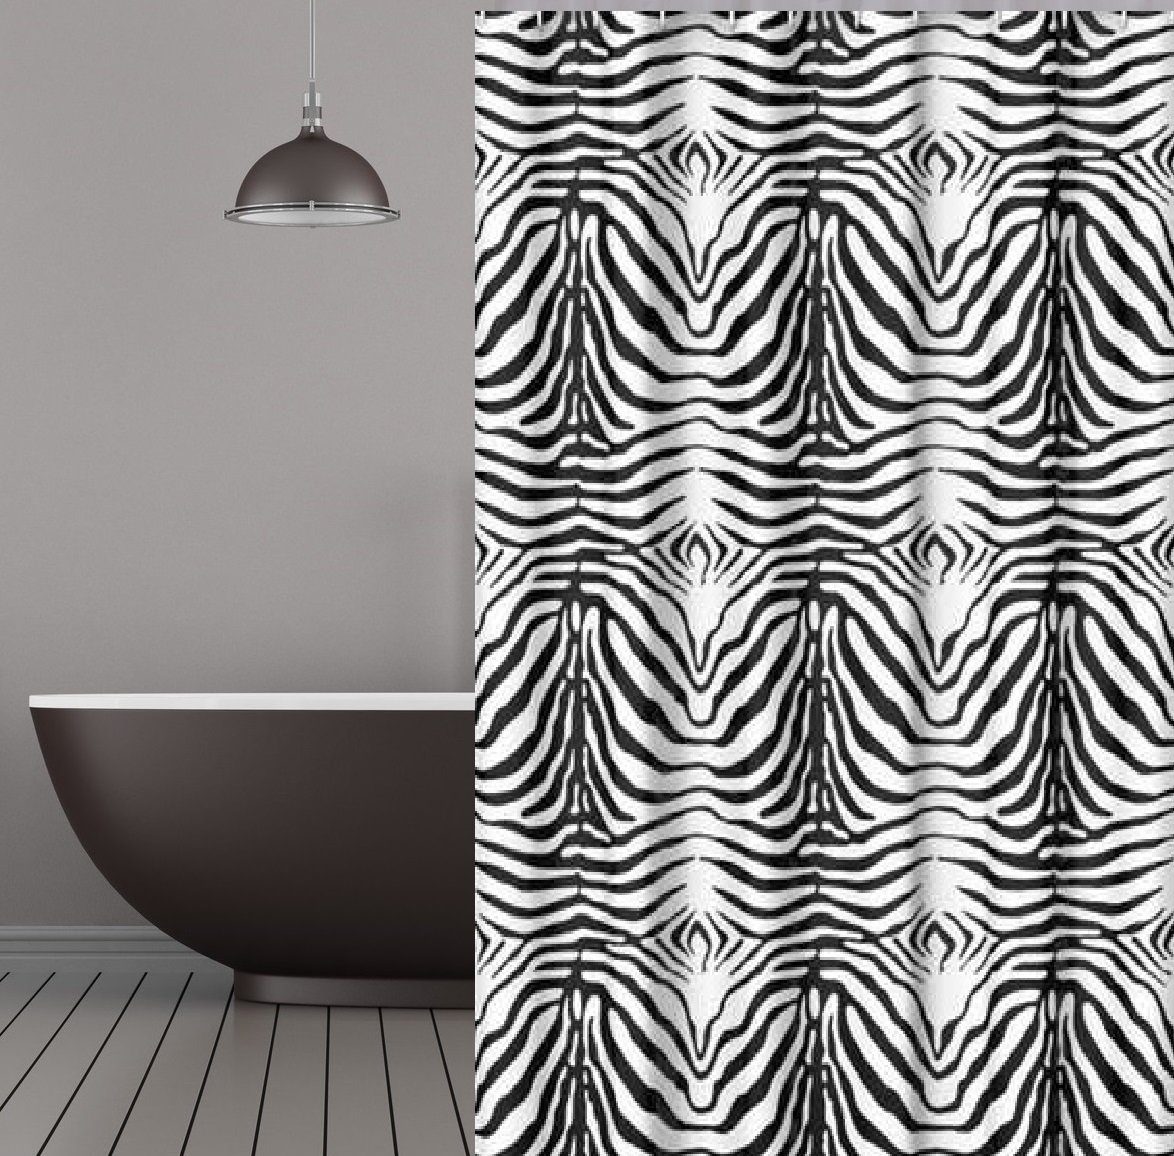 KS Handel 24 Duschvorhang Textil Duschvorhang 240x200 cm Zebra schwarz weiss Breite 240 cm